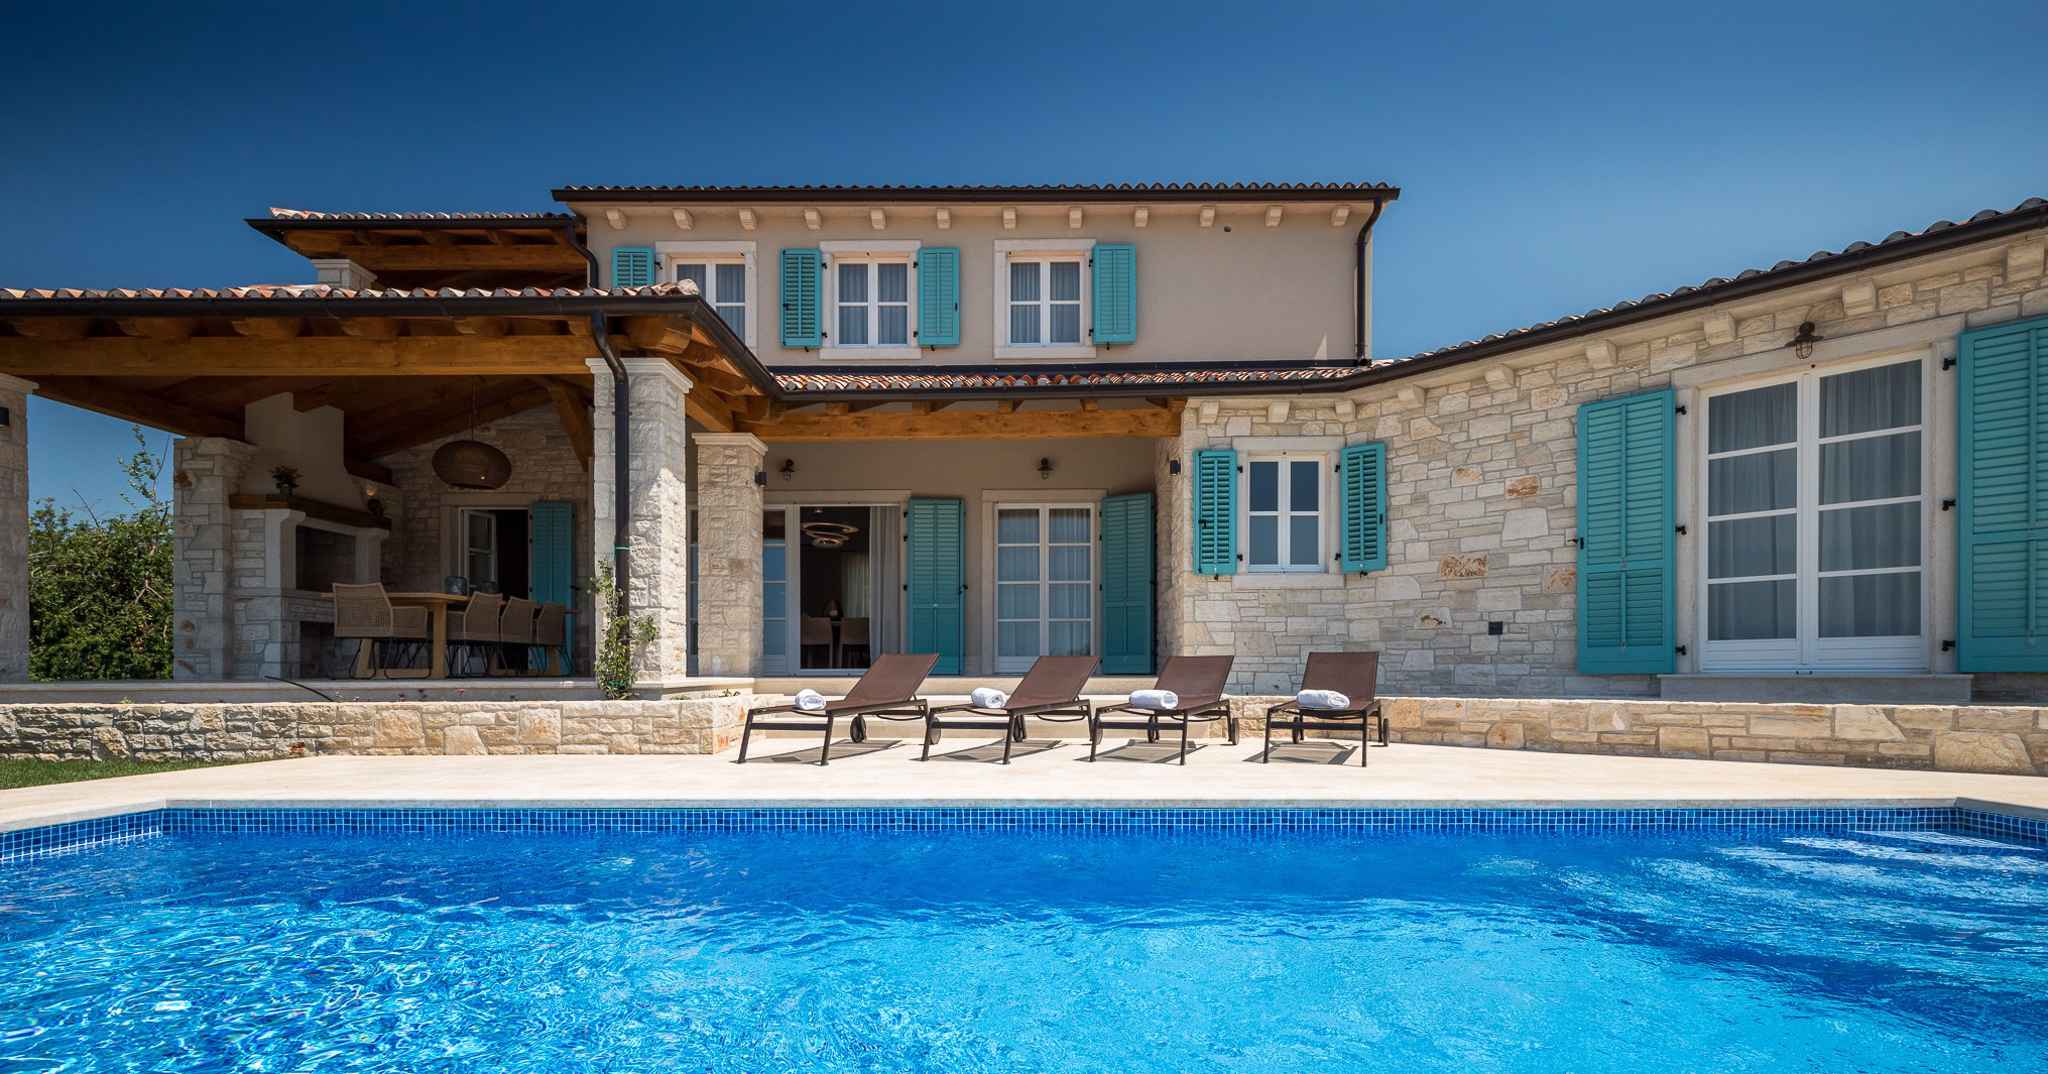 Villa mit Pool und gepflegtem Garten Ferienhaus in Europa